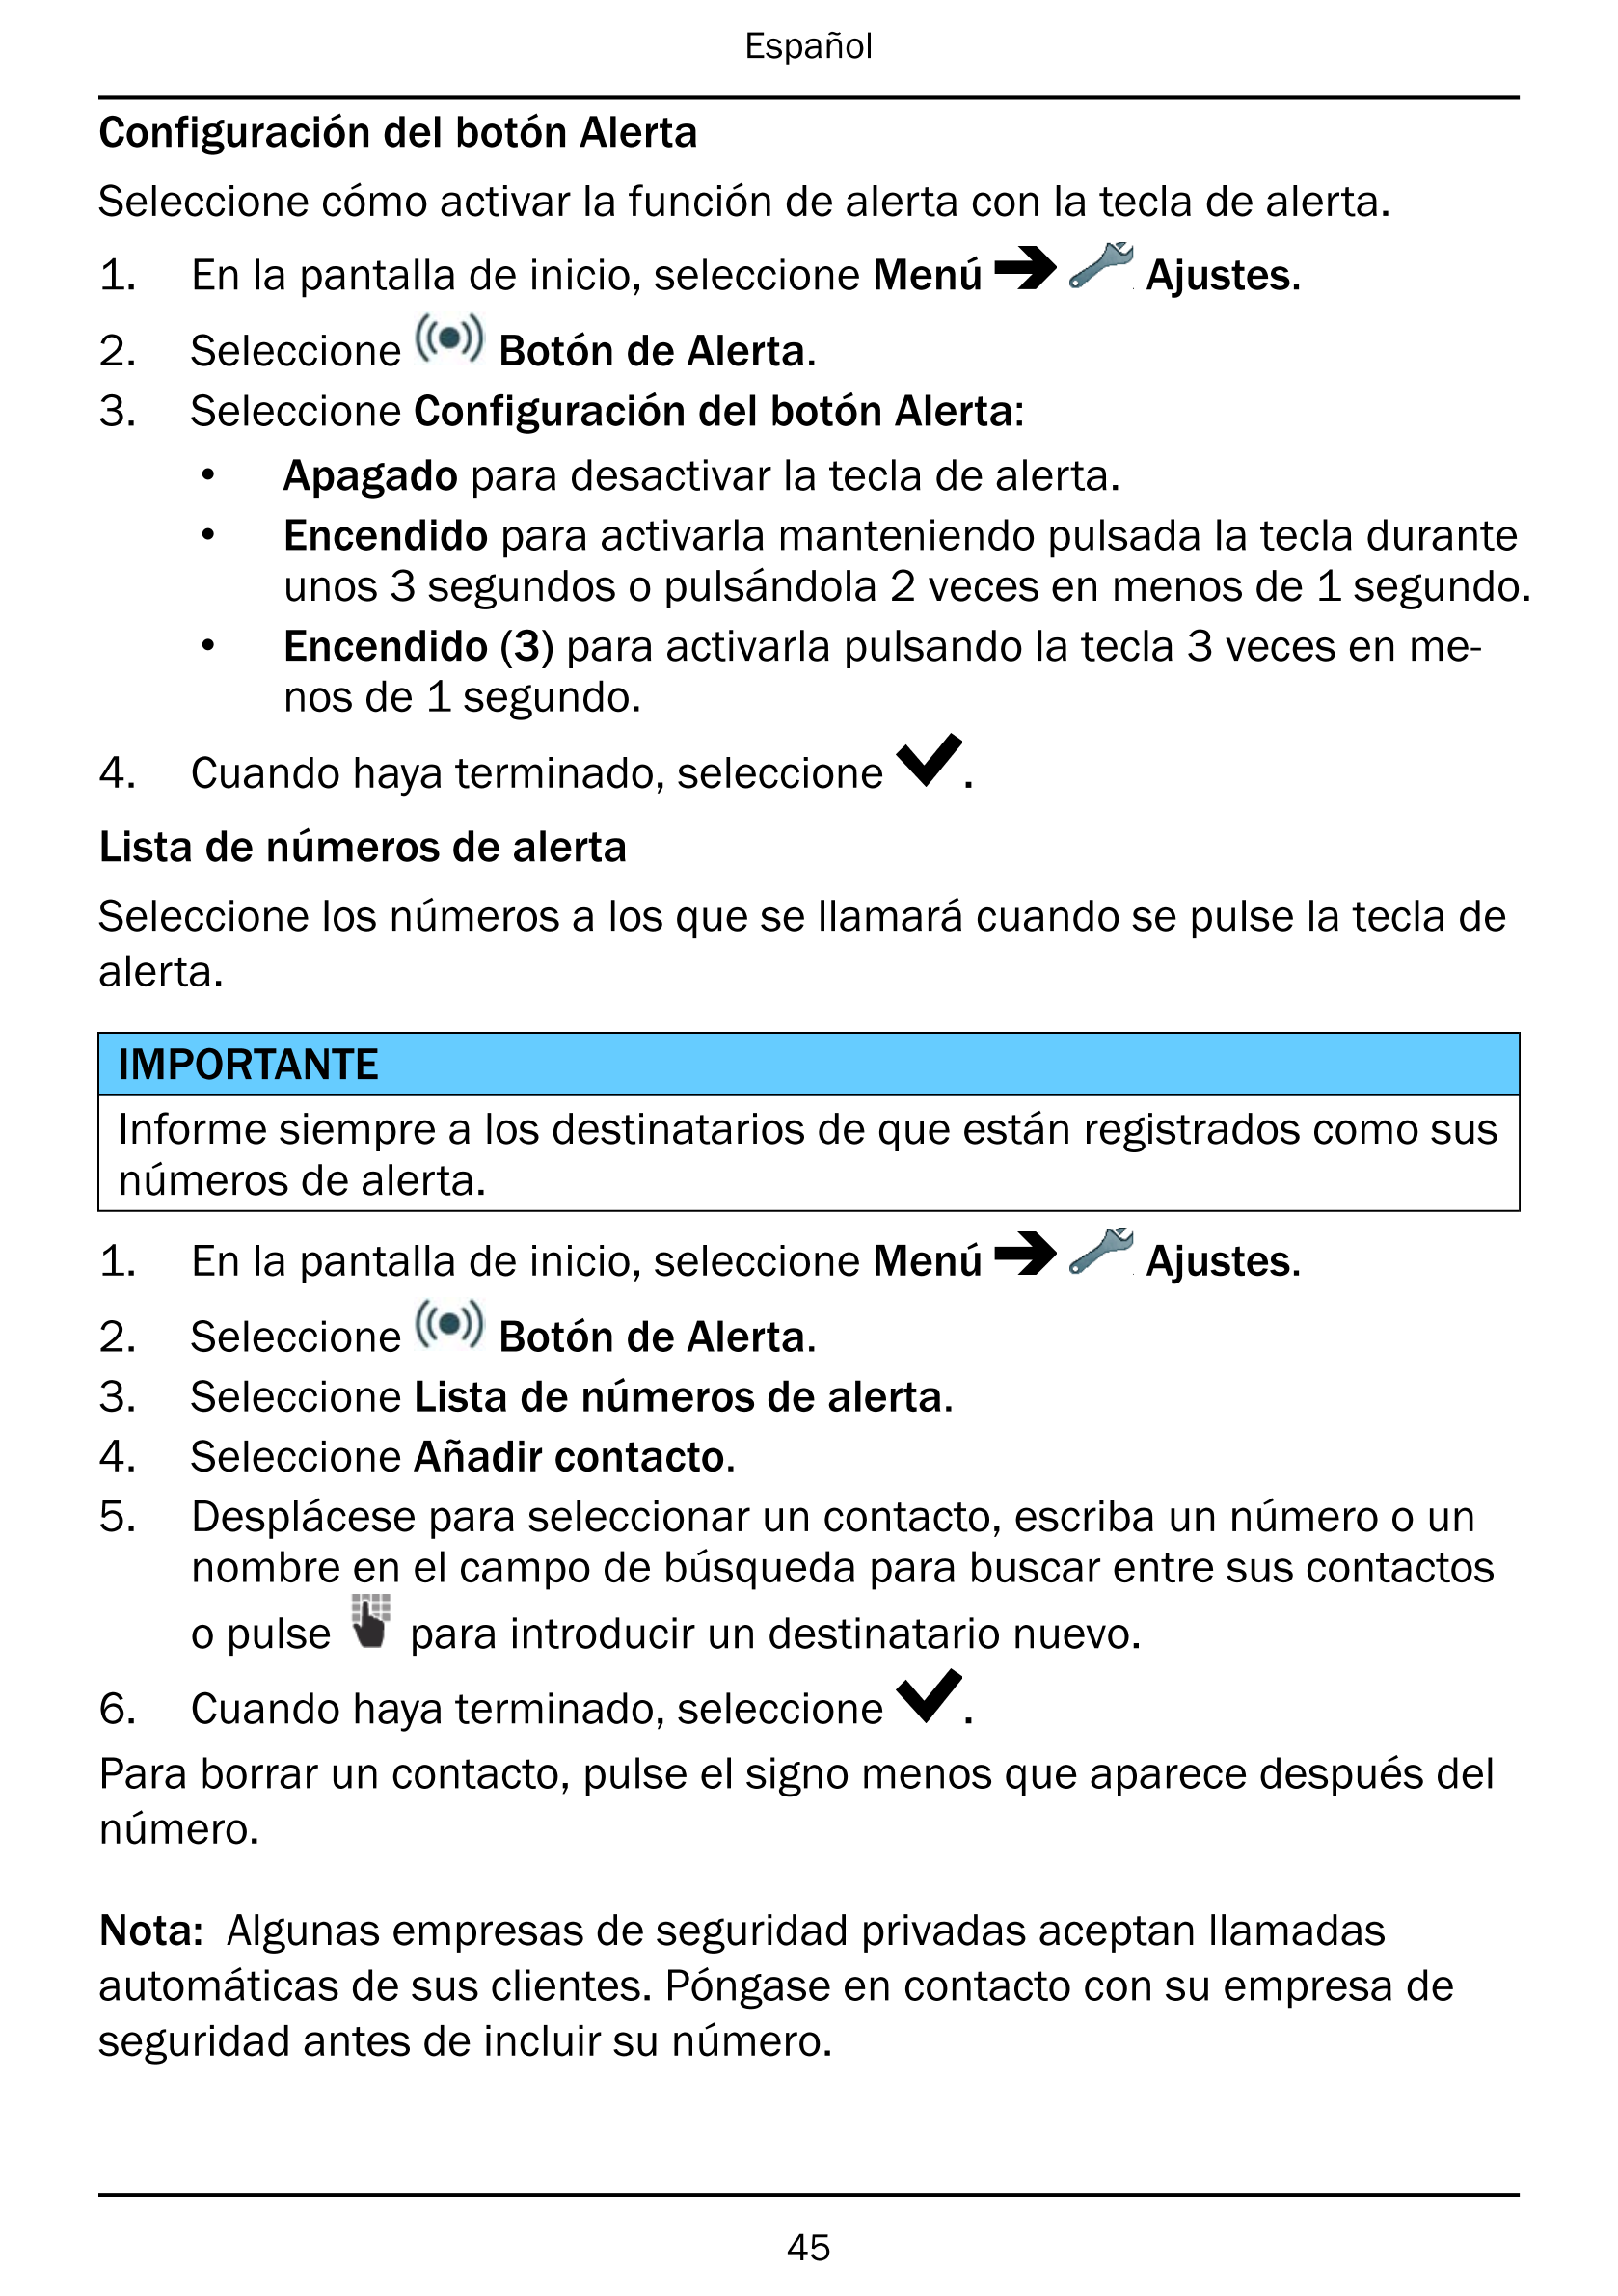 Español
Configuración del botón Alerta
Seleccione cómo activar la función de alerta con la tecla de alerta.
1.     En la pantall